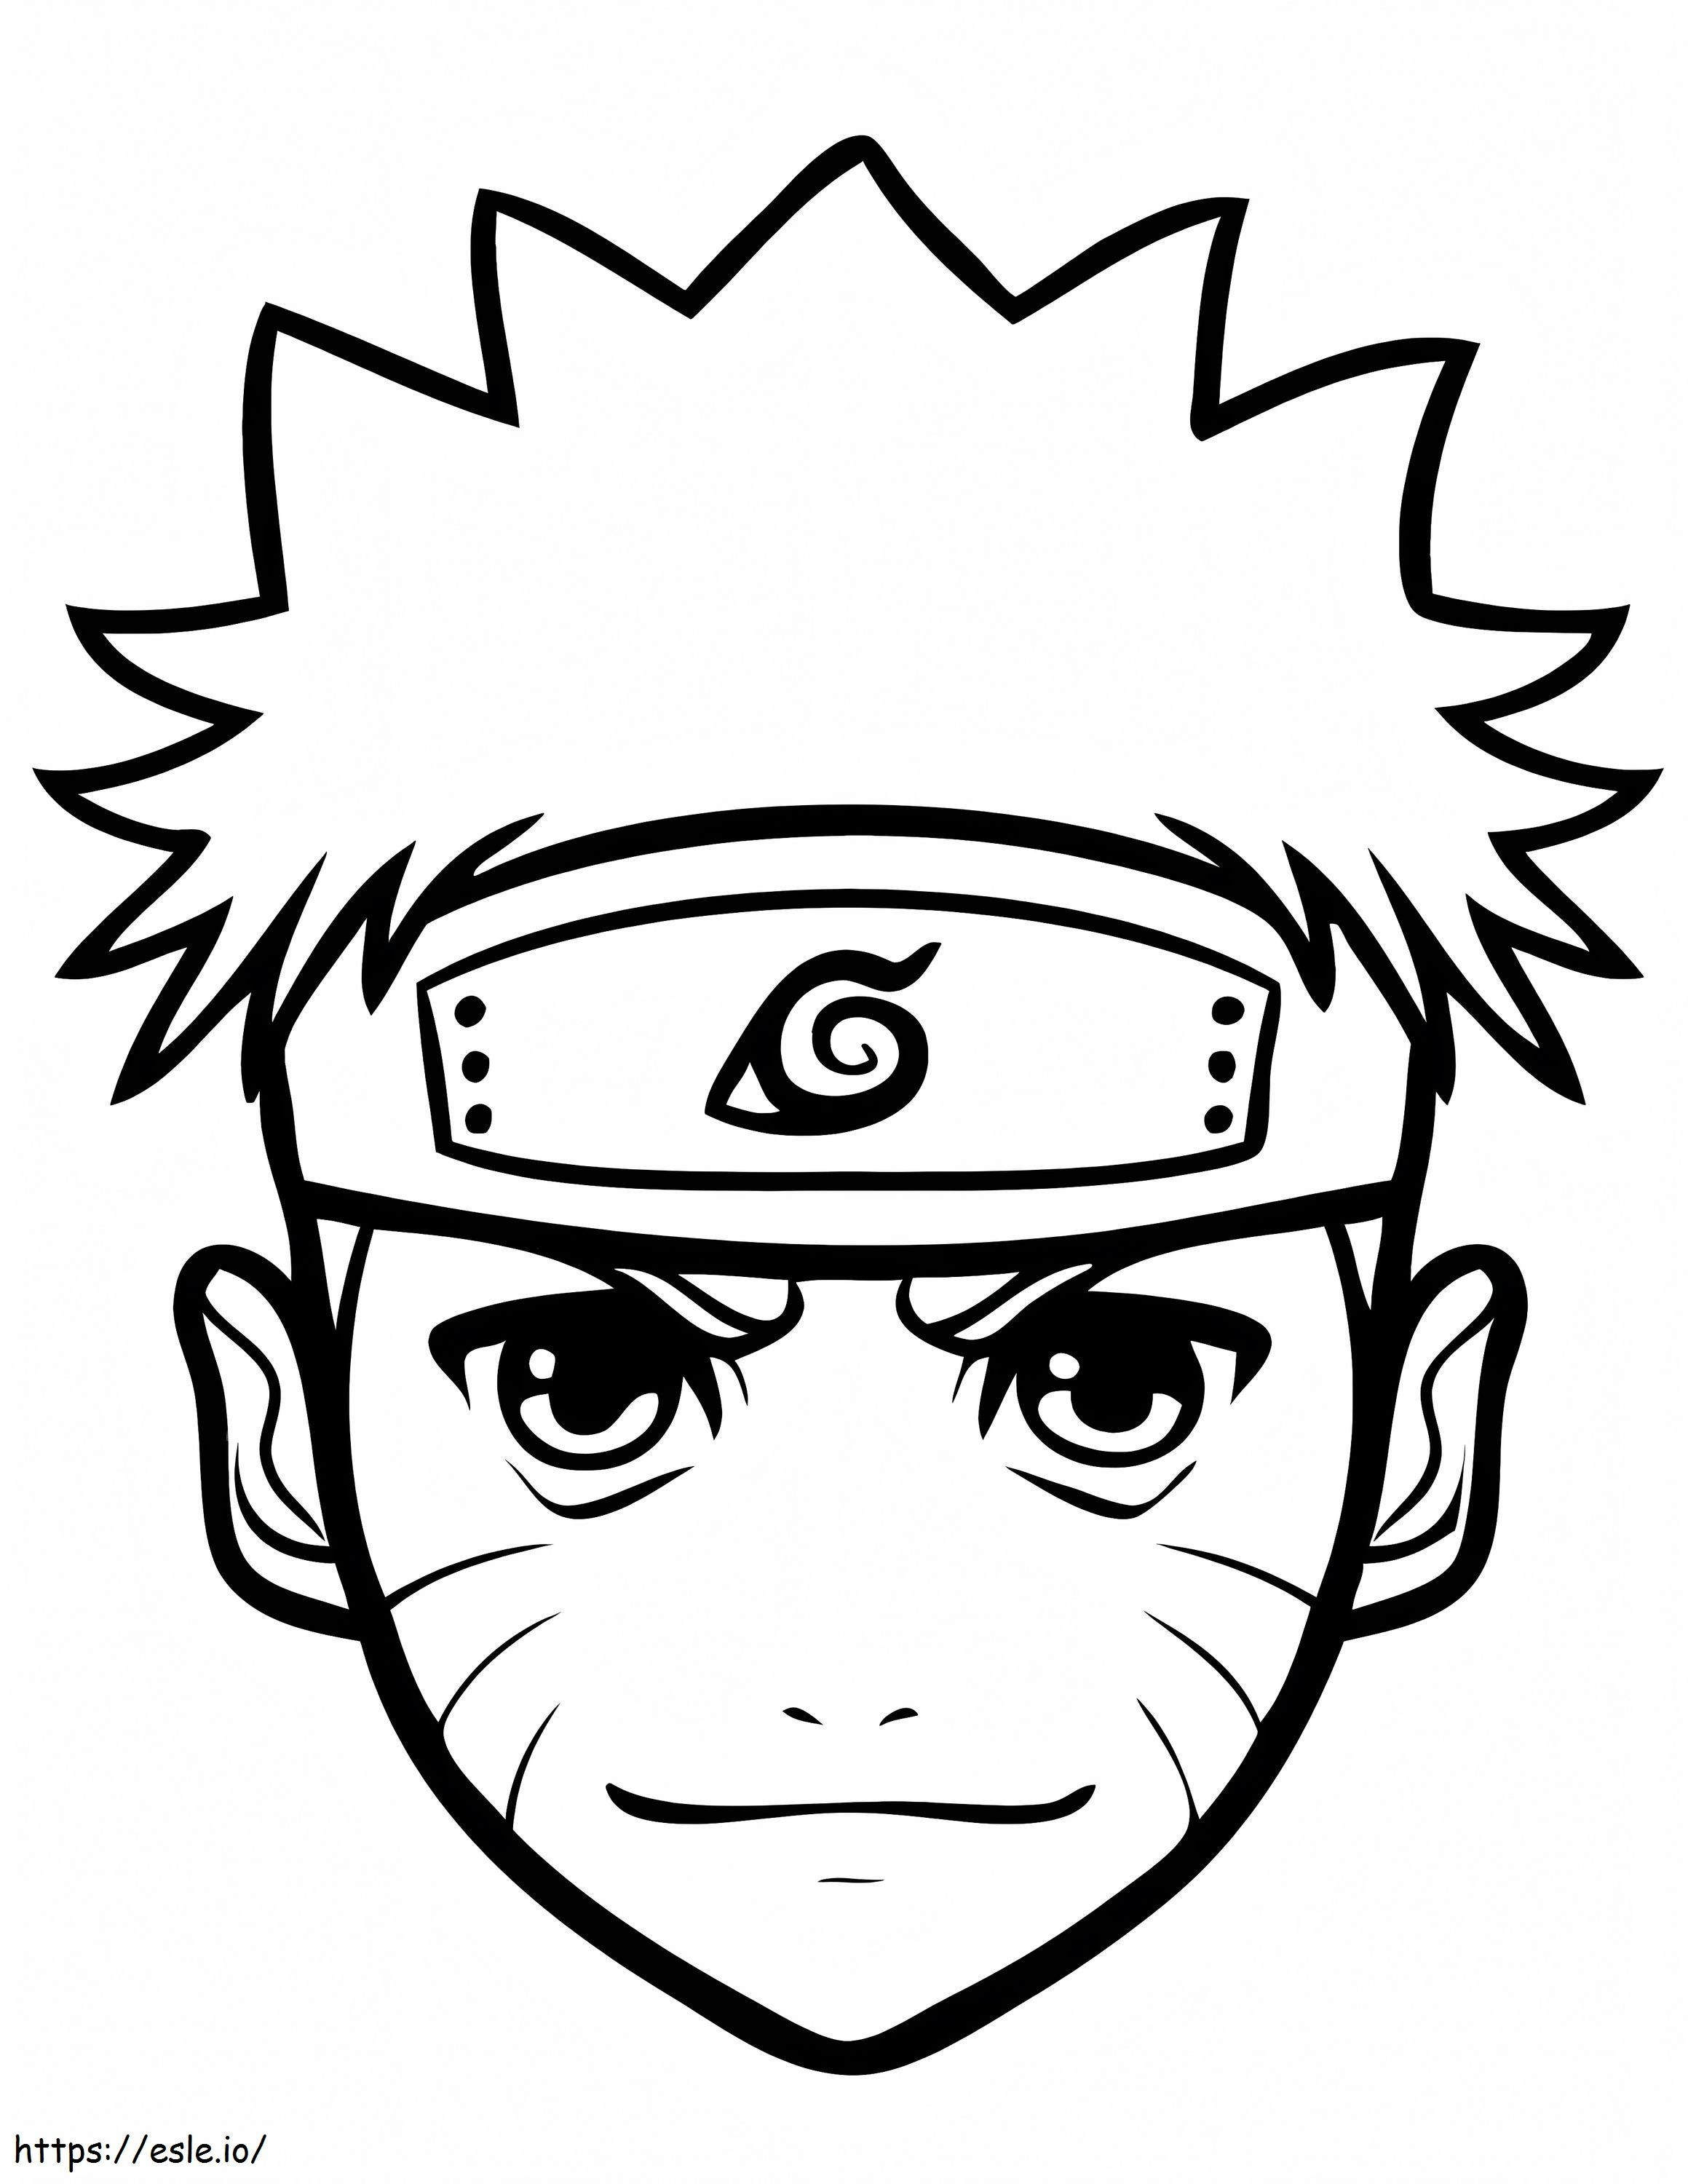 Gesicht von Naruto ausmalbilder